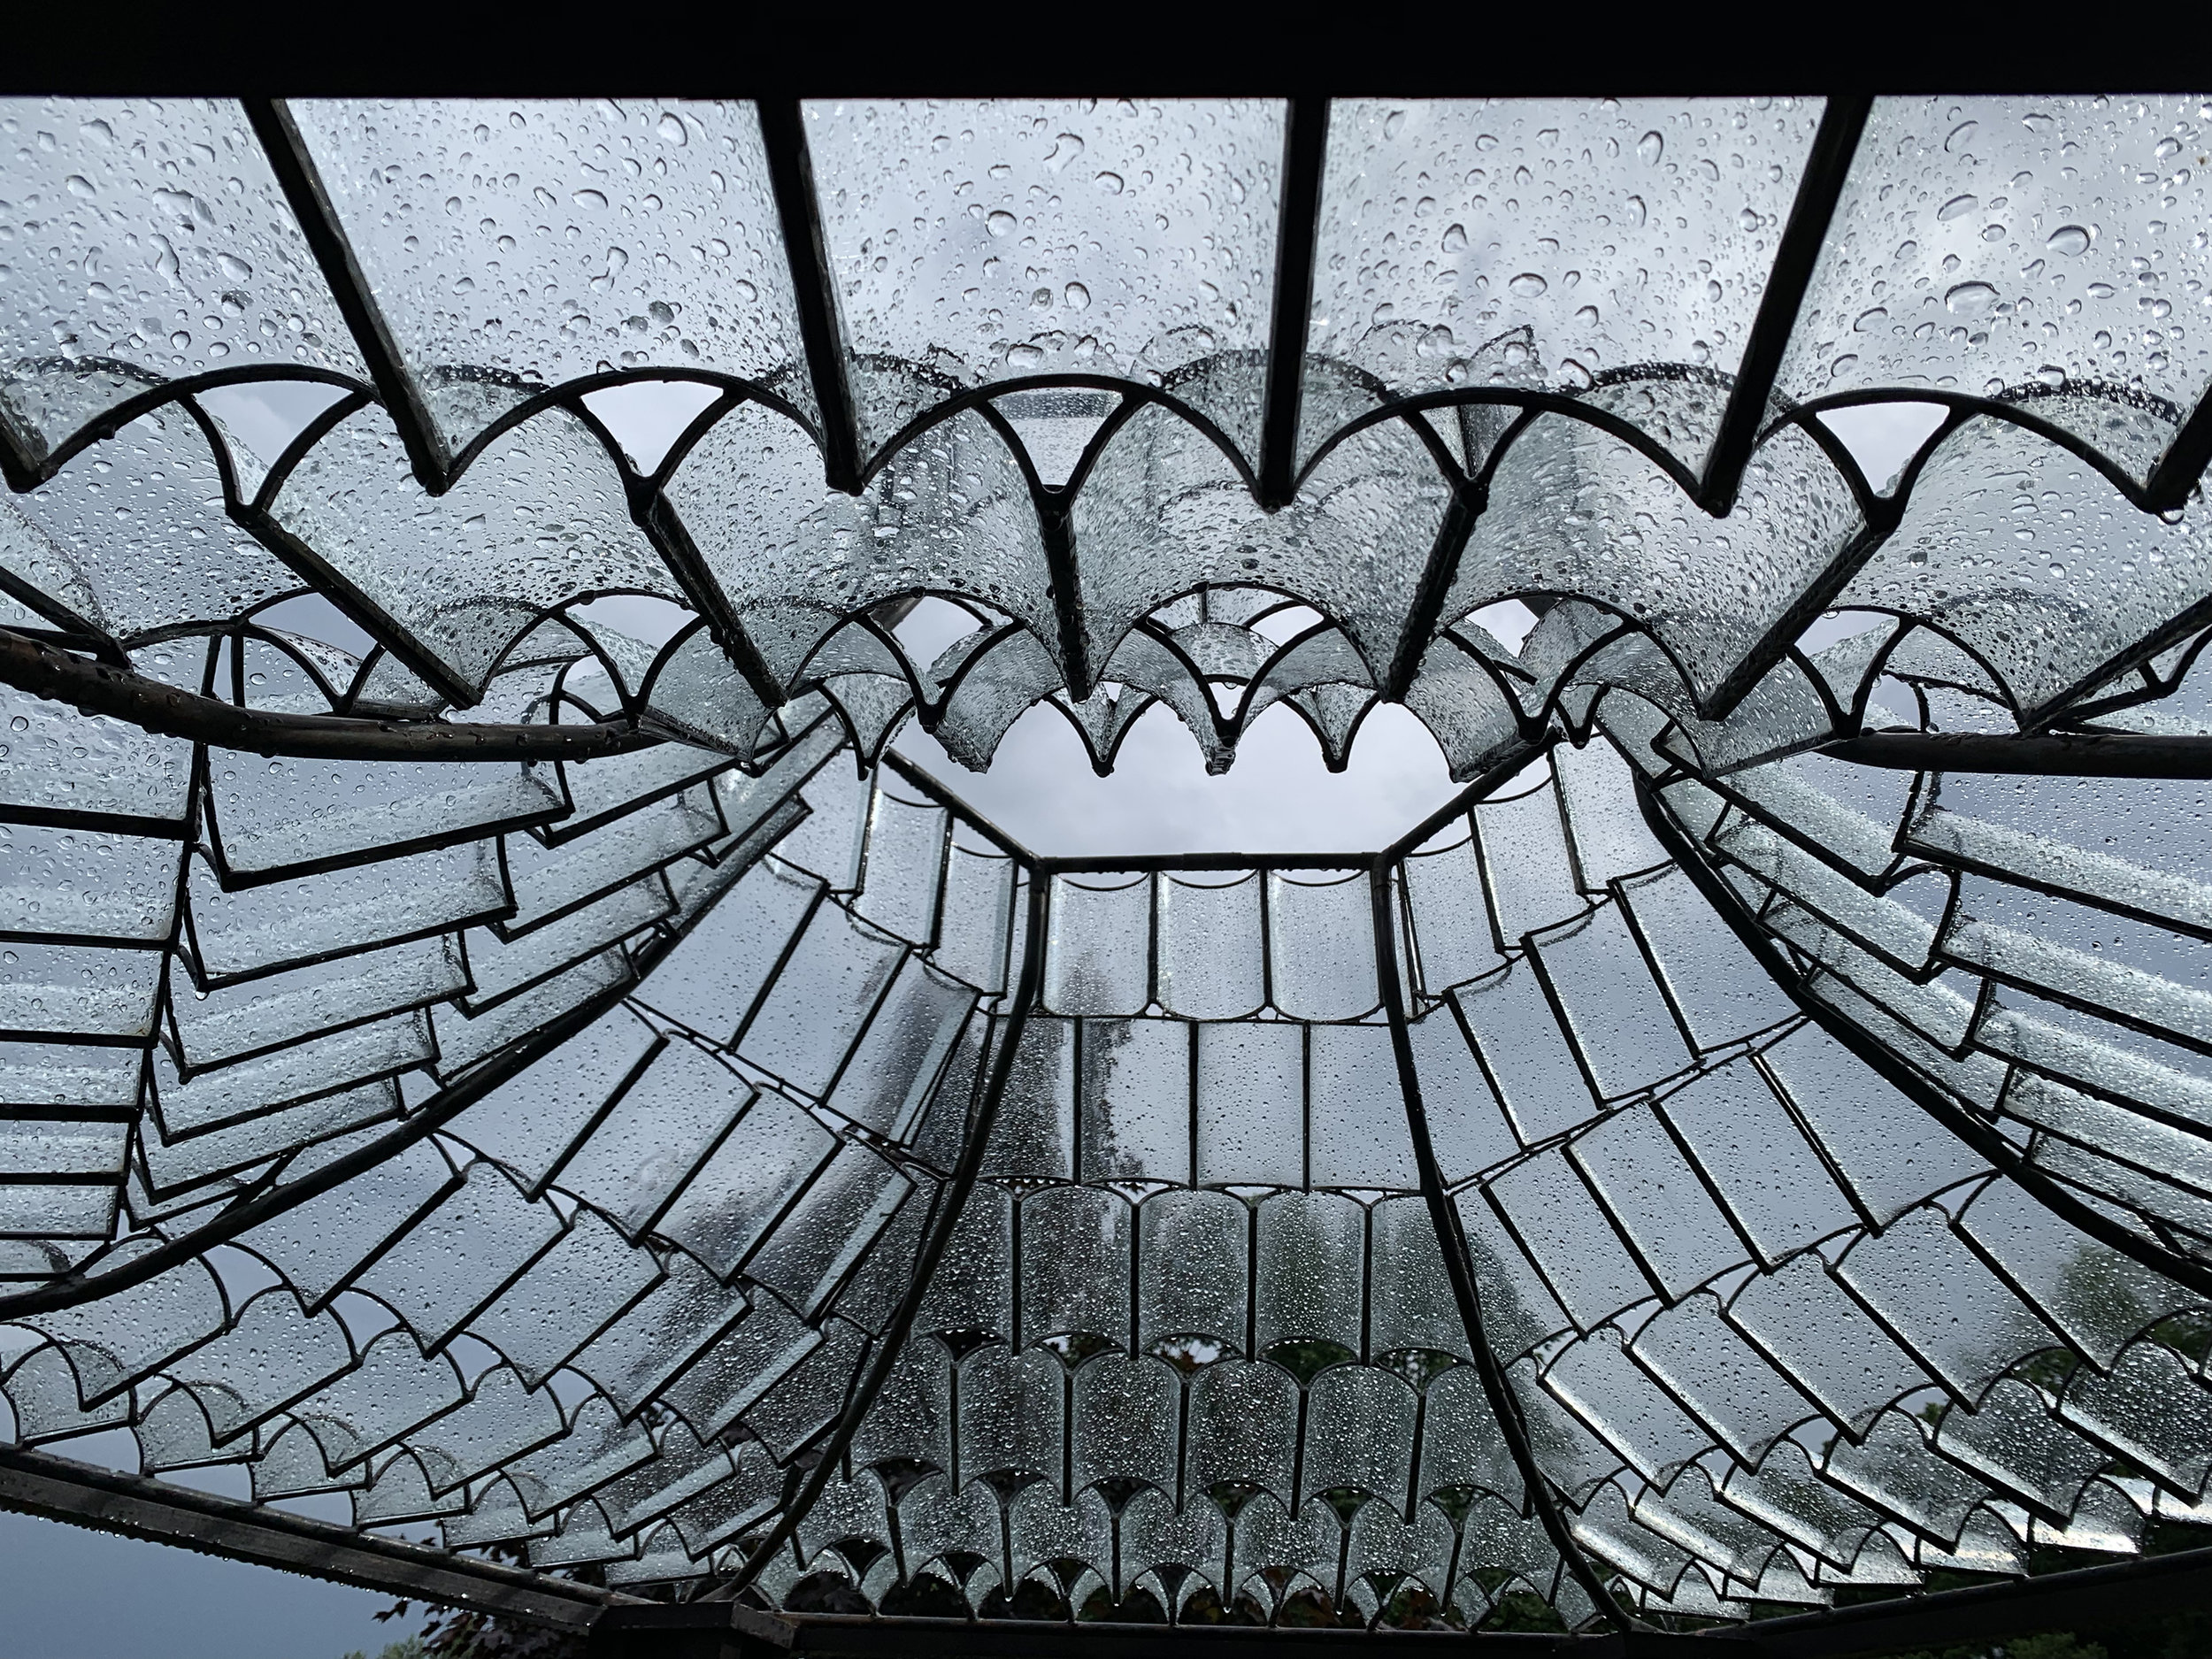 The Ceiling (Rain Detail)